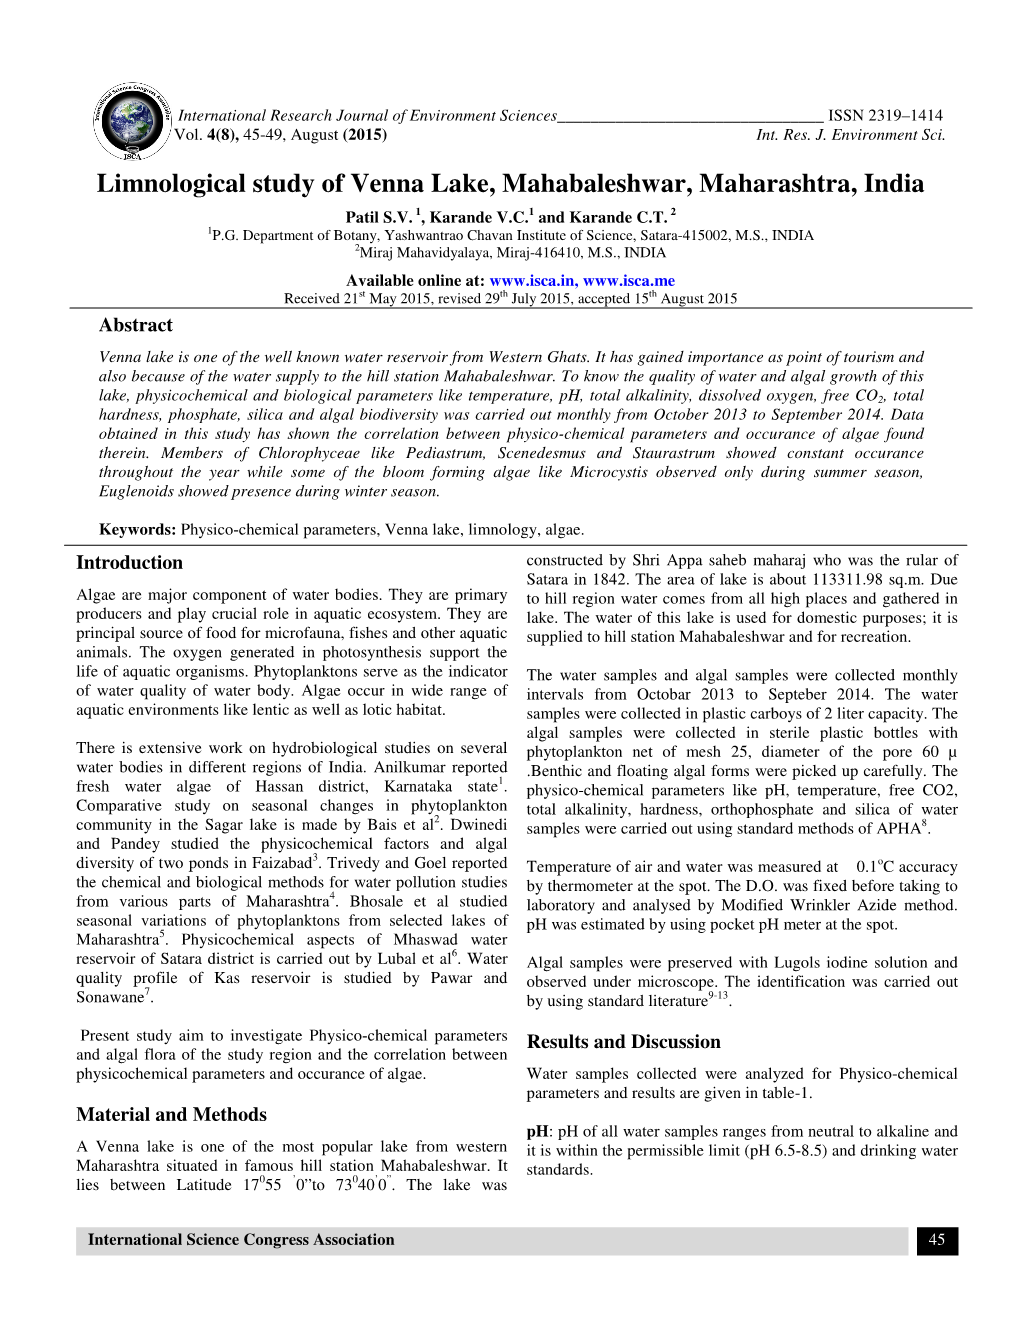 Limnological Study of Venna Lake, Mahabaleshwar, Maharashtra, India